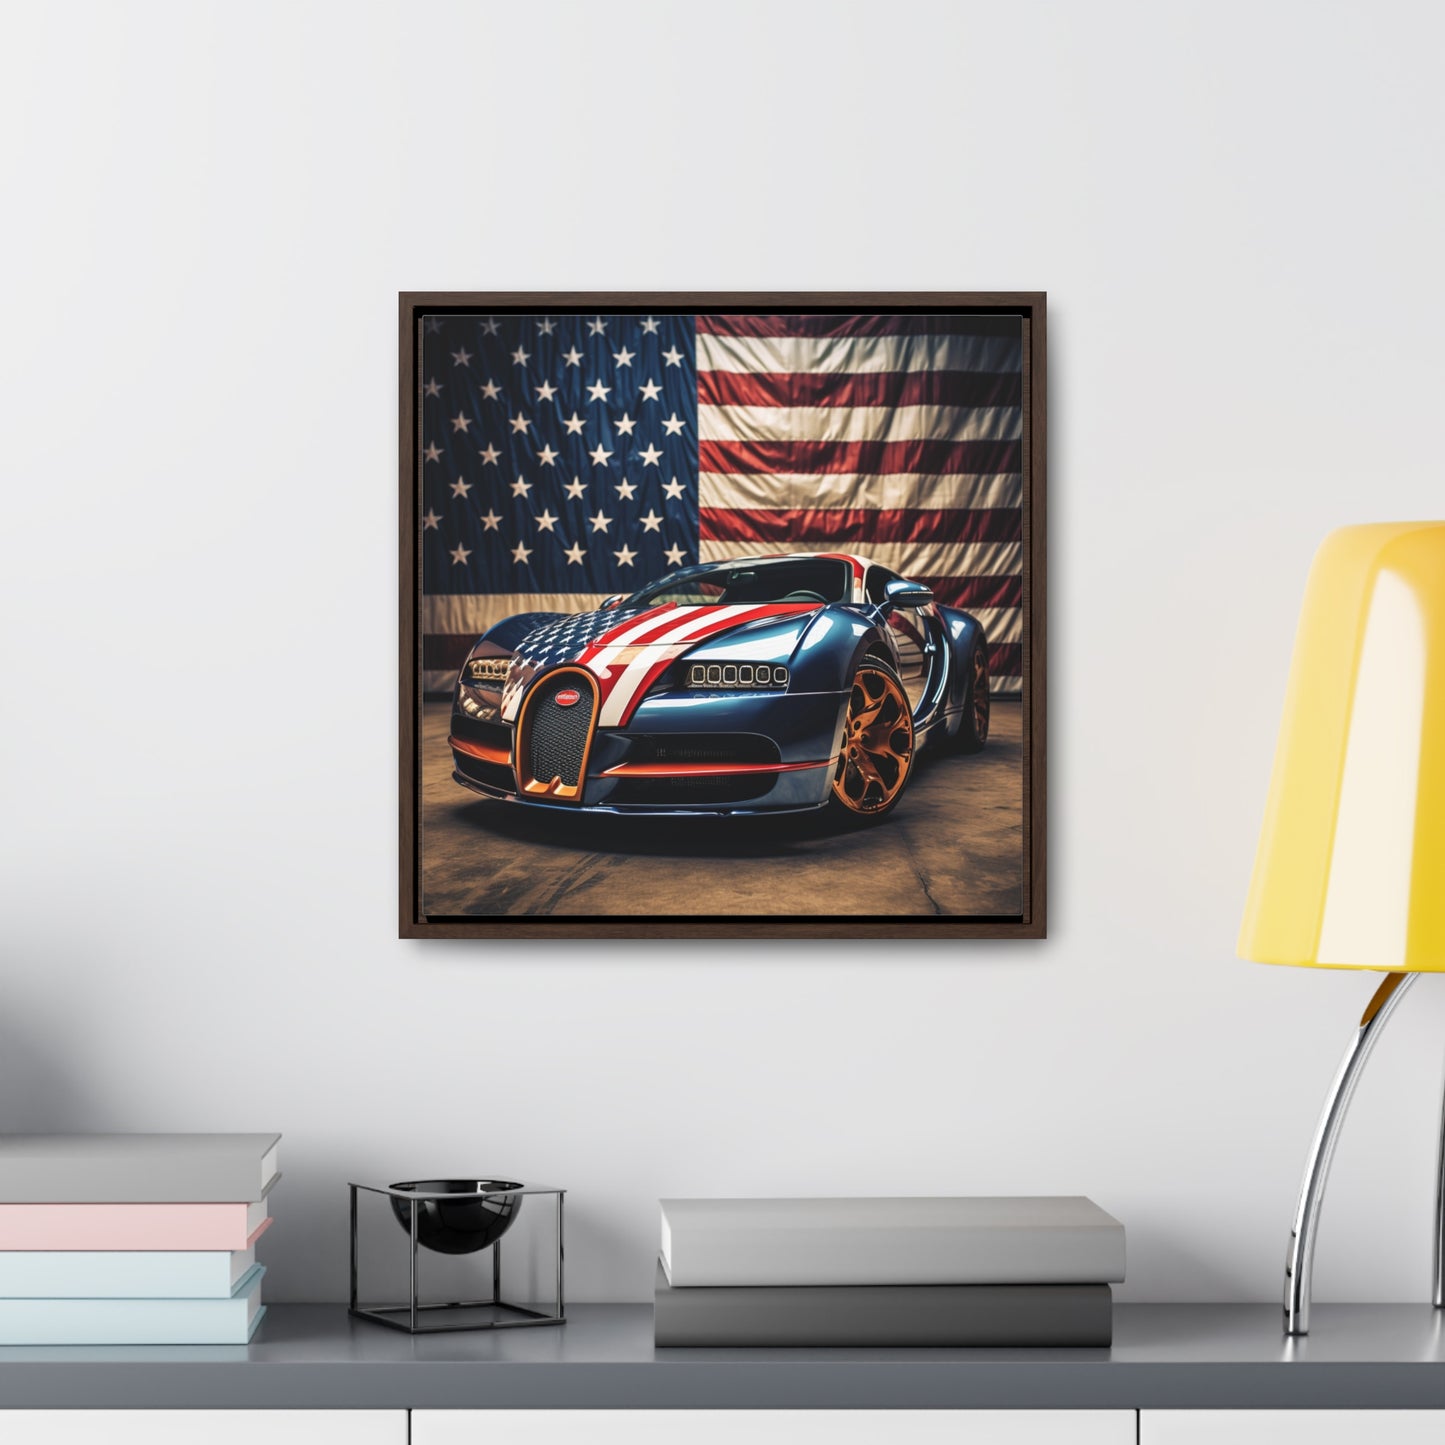 Gallery Canvas Wraps, Square Frame Bugatti Flag American 4